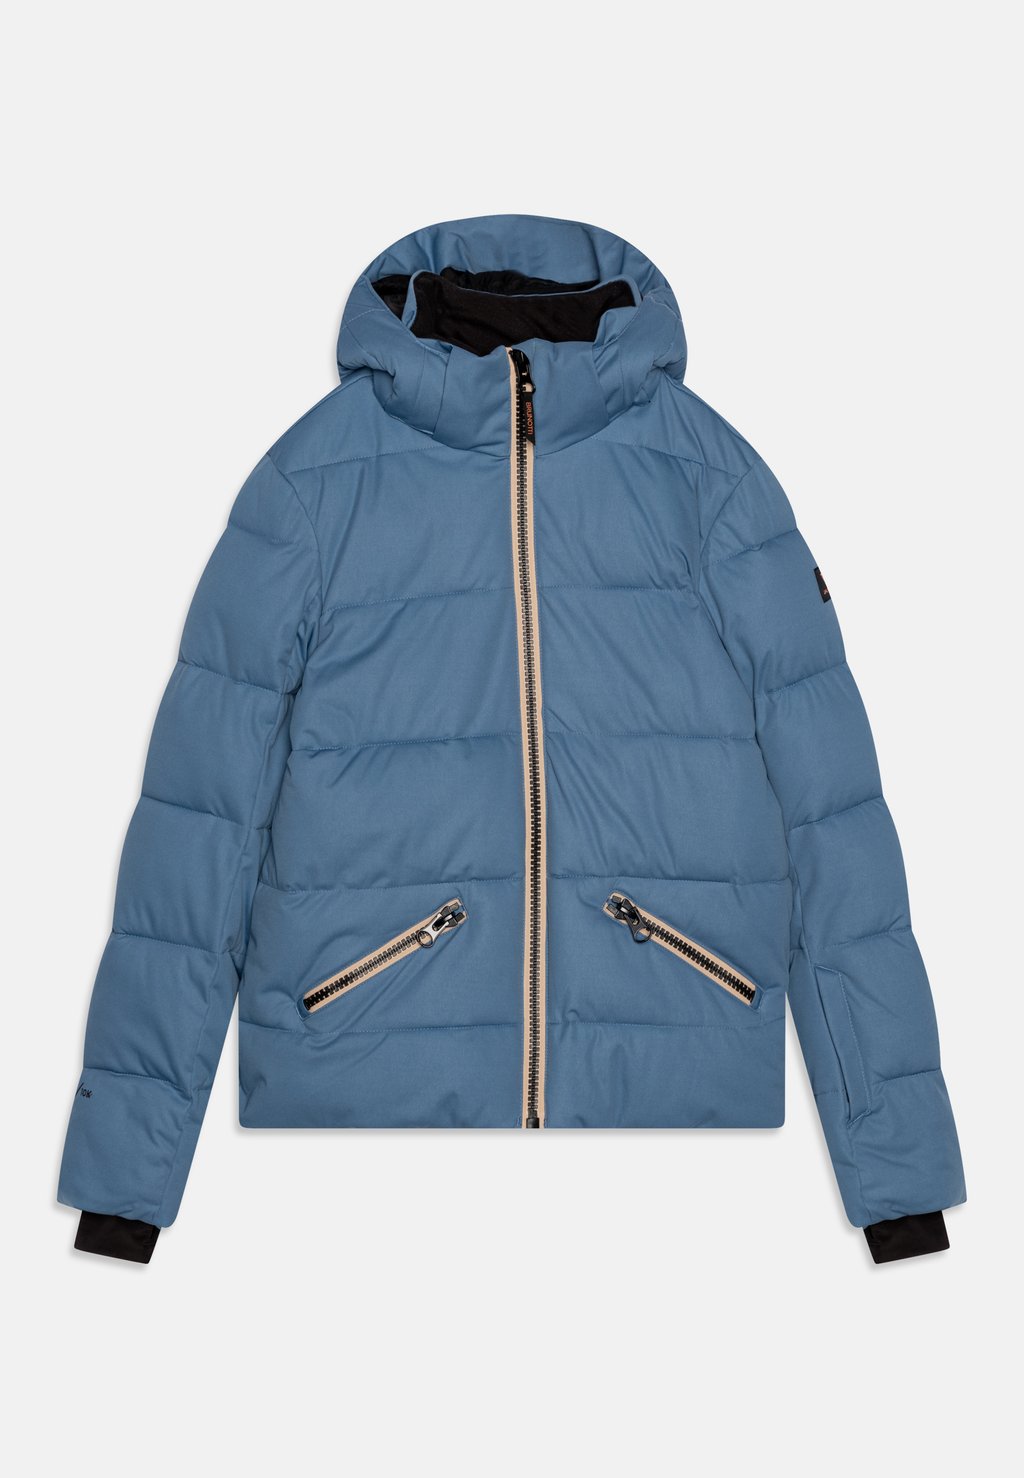 Лыжная куртка Iraika Girls Snow Brunotti, цвет steel blue